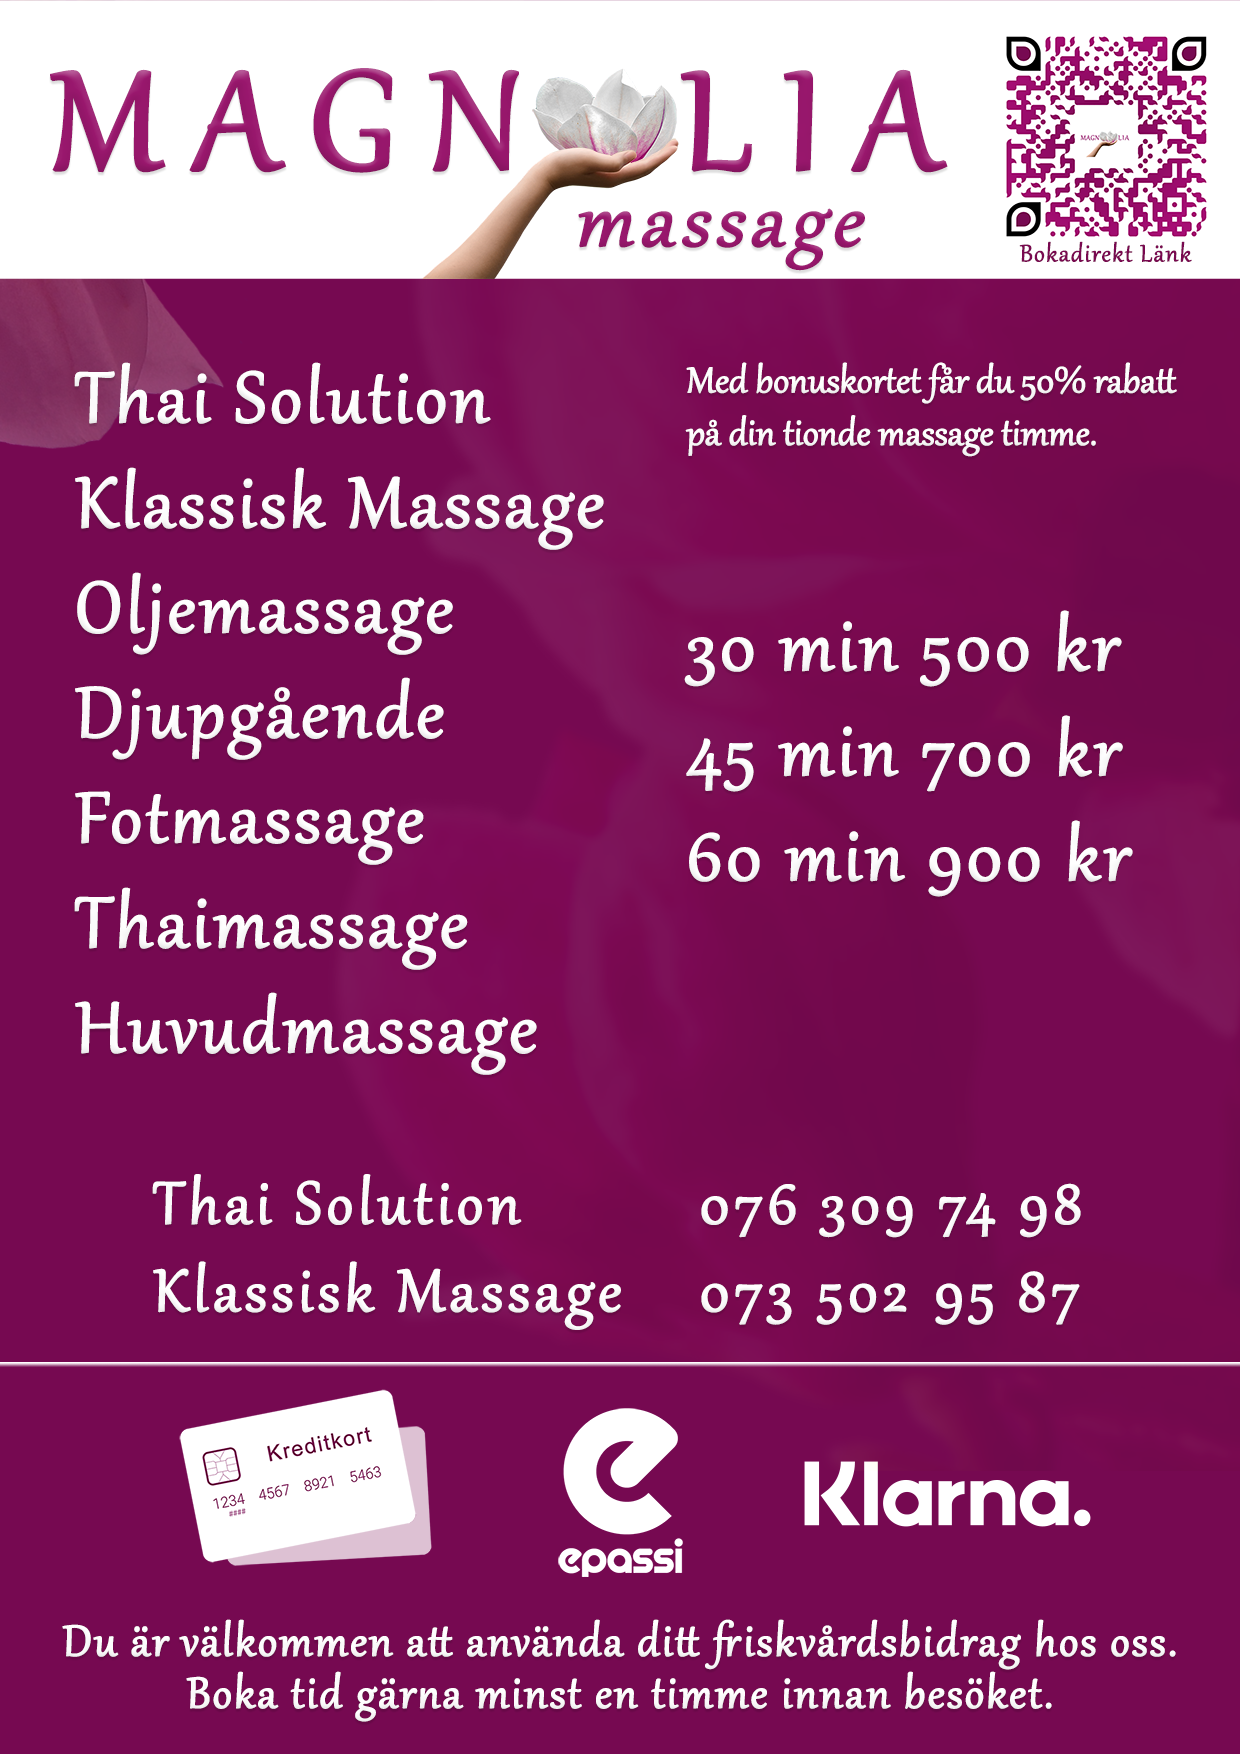 Boka massage i Eskilstuna – Magnolia Massage